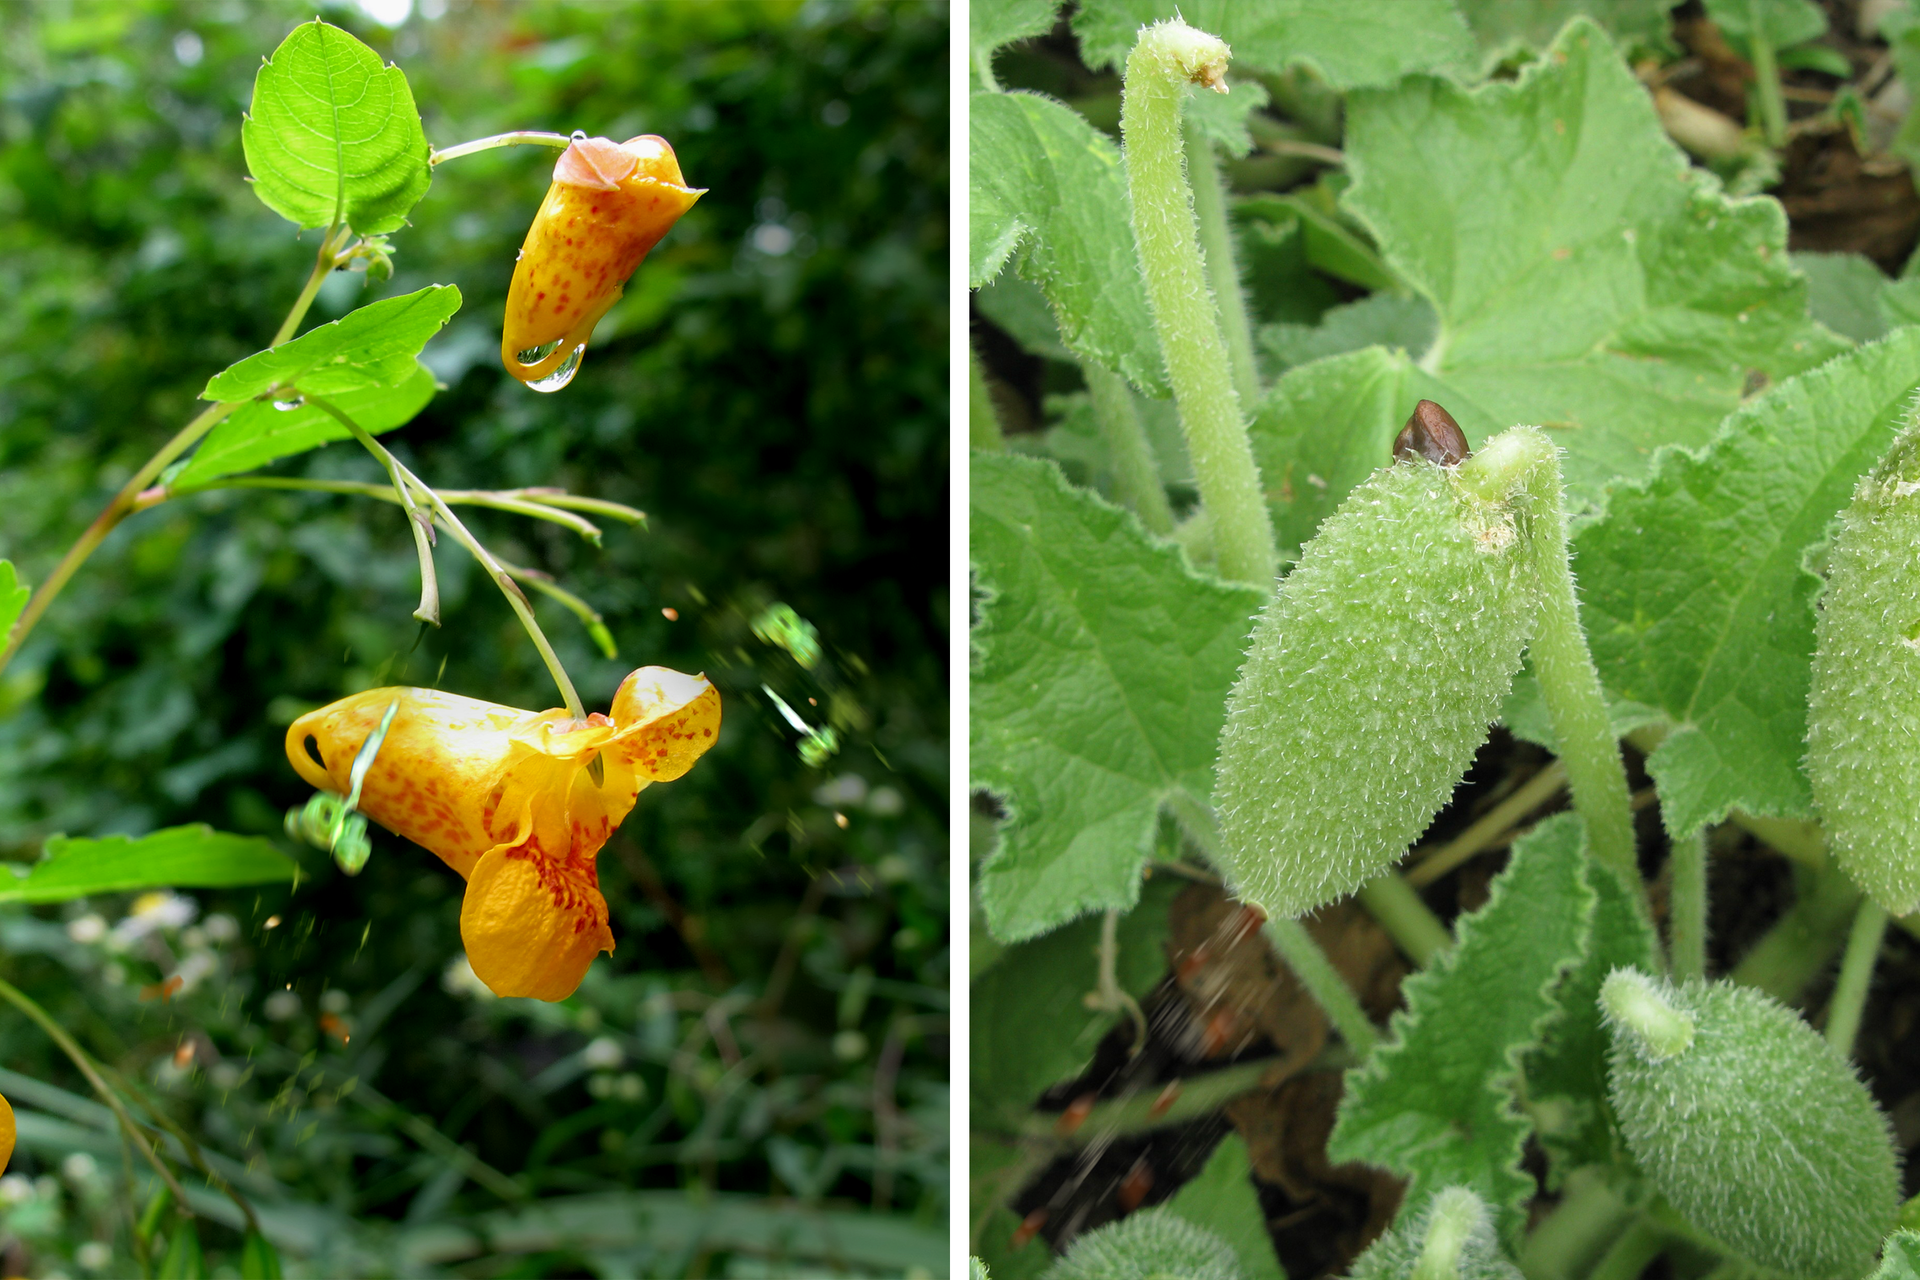 Fotografie przedstawiają rośliny, rozsiewające się samoczynnie. Na tej po lewej na pędzie znajdują się dwa pomarańczowe kwiaty. Po prawej trzy grube, kolczaste owoce. Niewielkie zielone i brązowe smugi w dół na obu fotografiach oznaczają „wystrzelenie” nasion.